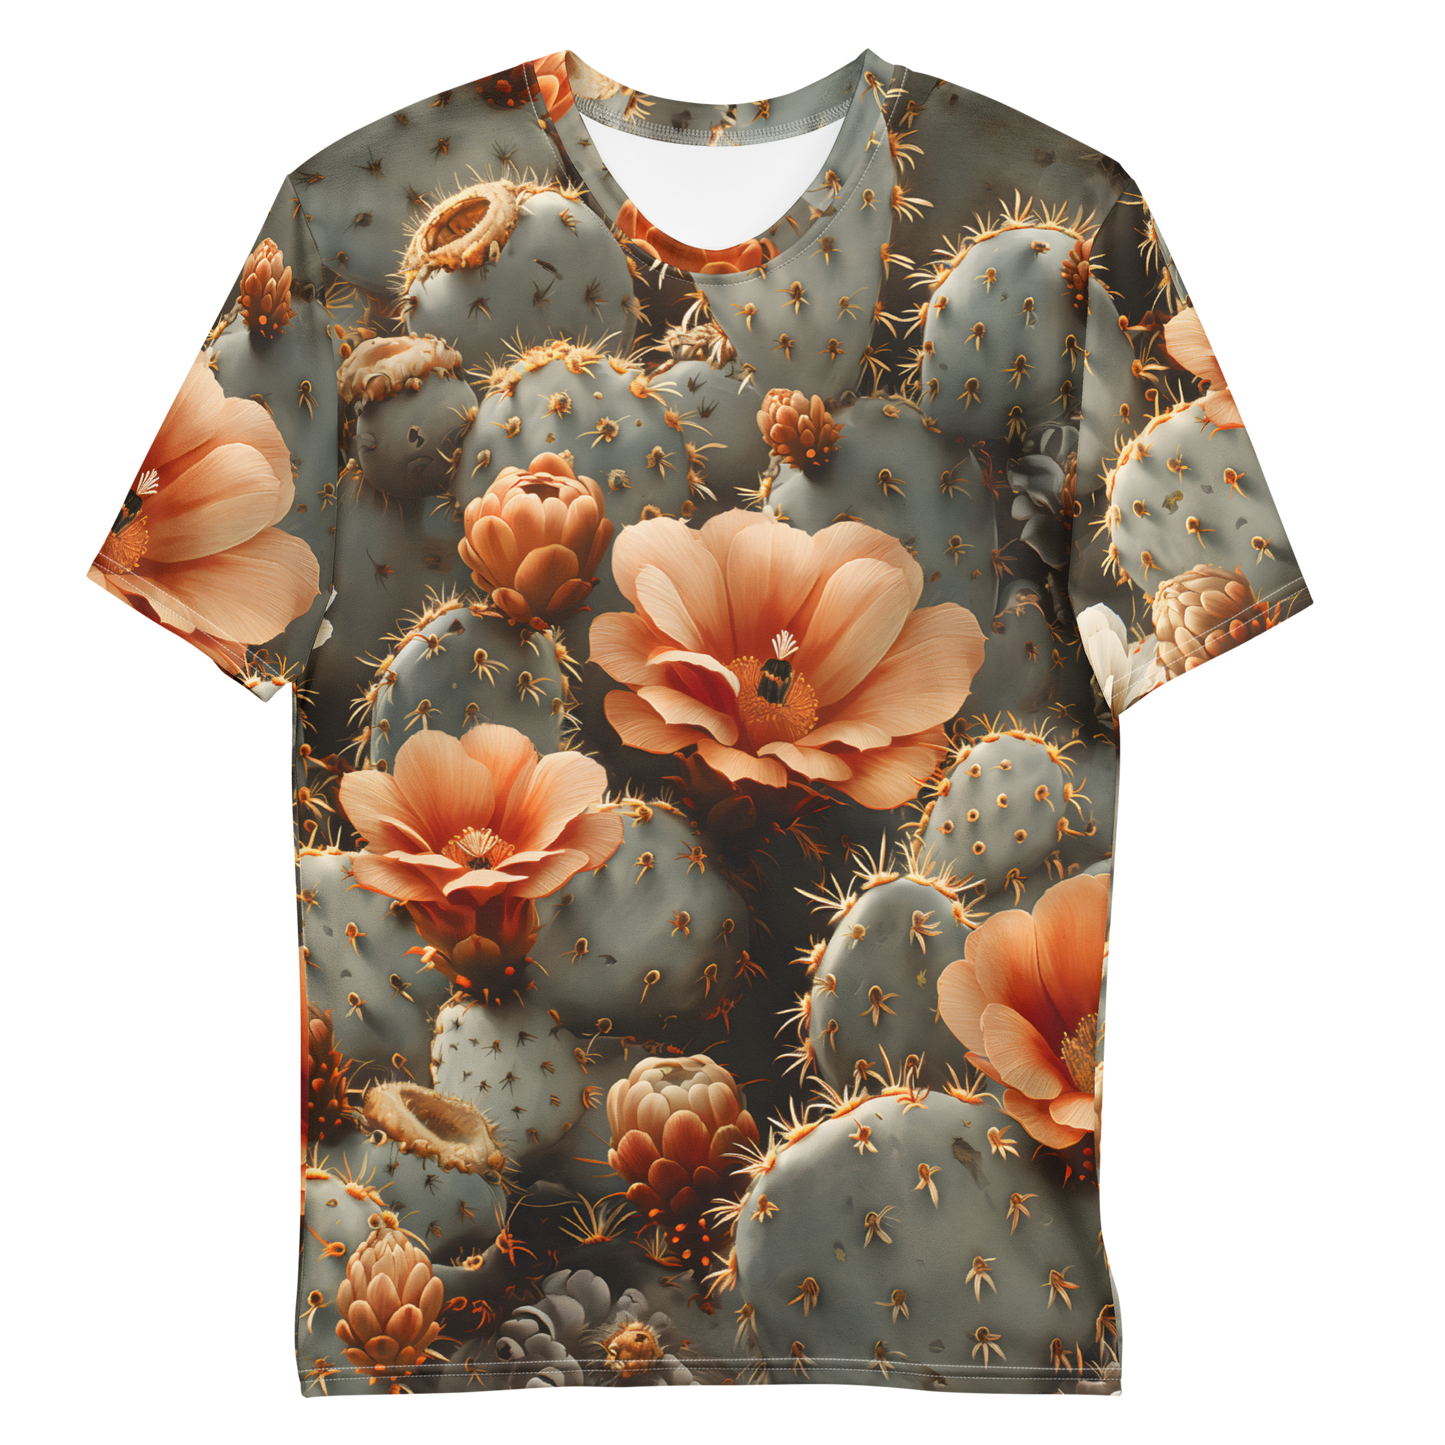 Desert Flowers Men's T-shirt - Psychedelic All Over Print